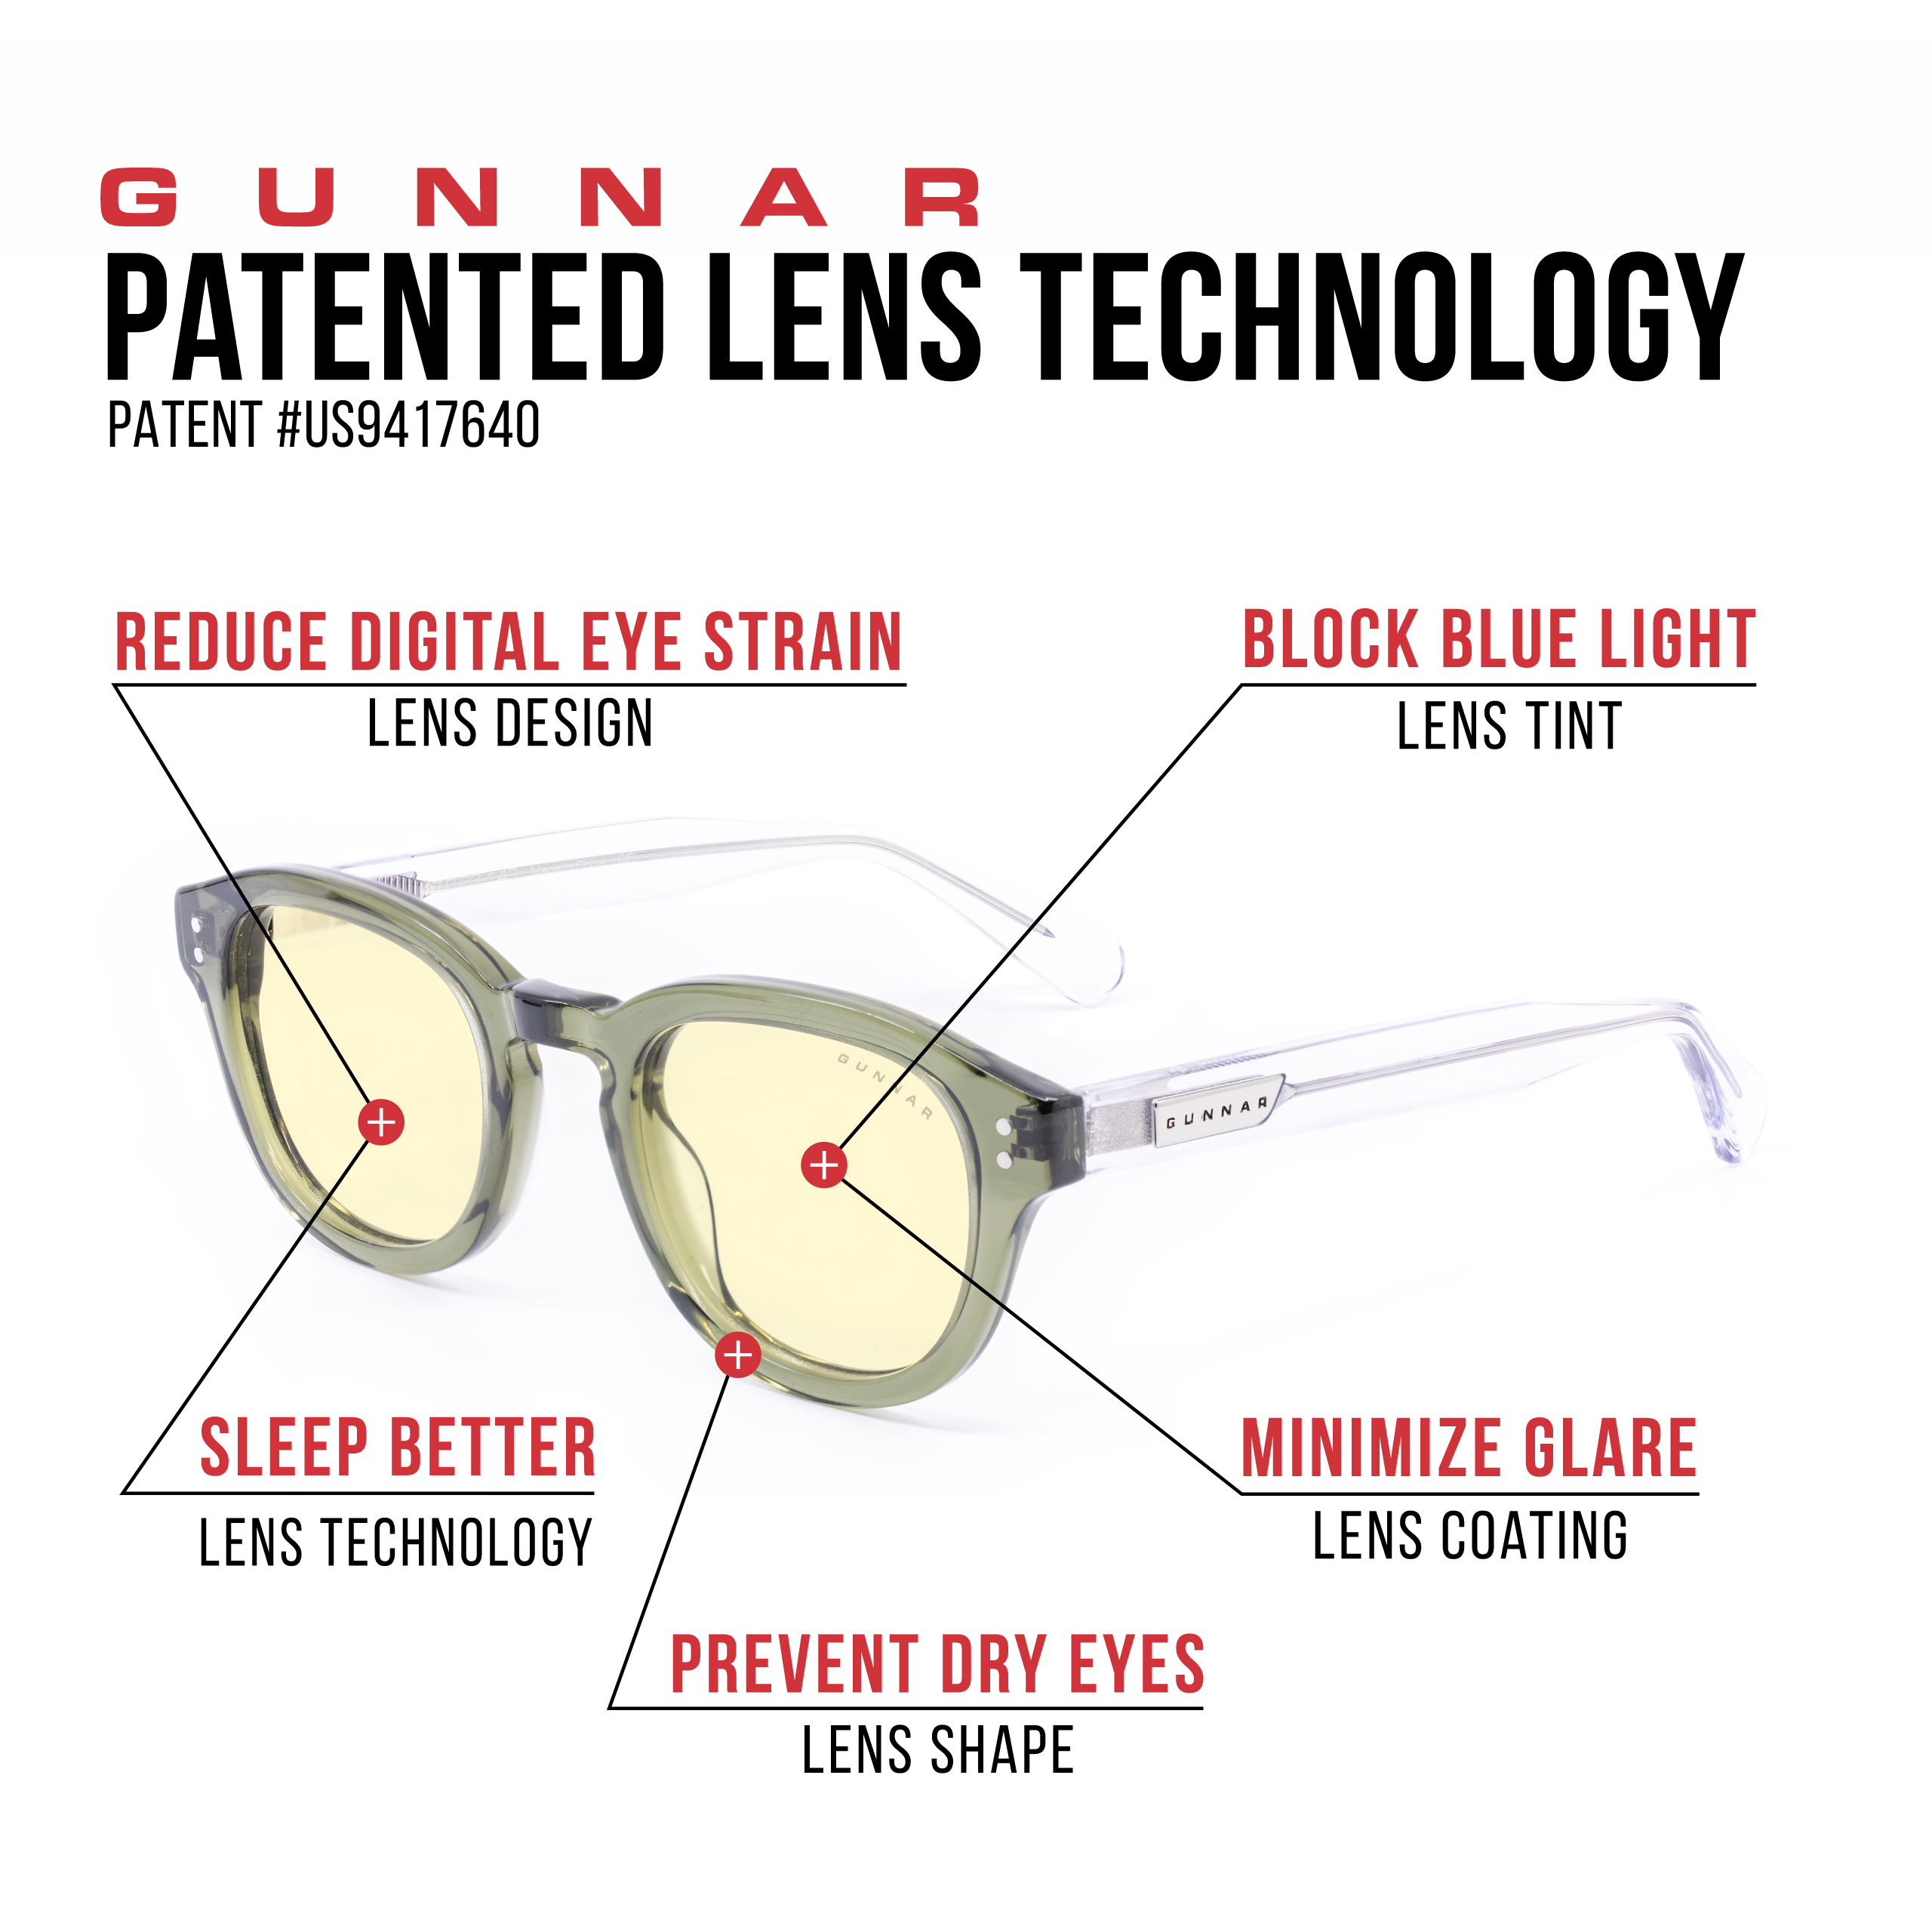 GUNNAR Emery Gaming Premium, Amber Tönung, Sage/Crystal Rahmen, Brille Blaulichtfilter, UV-Schutz